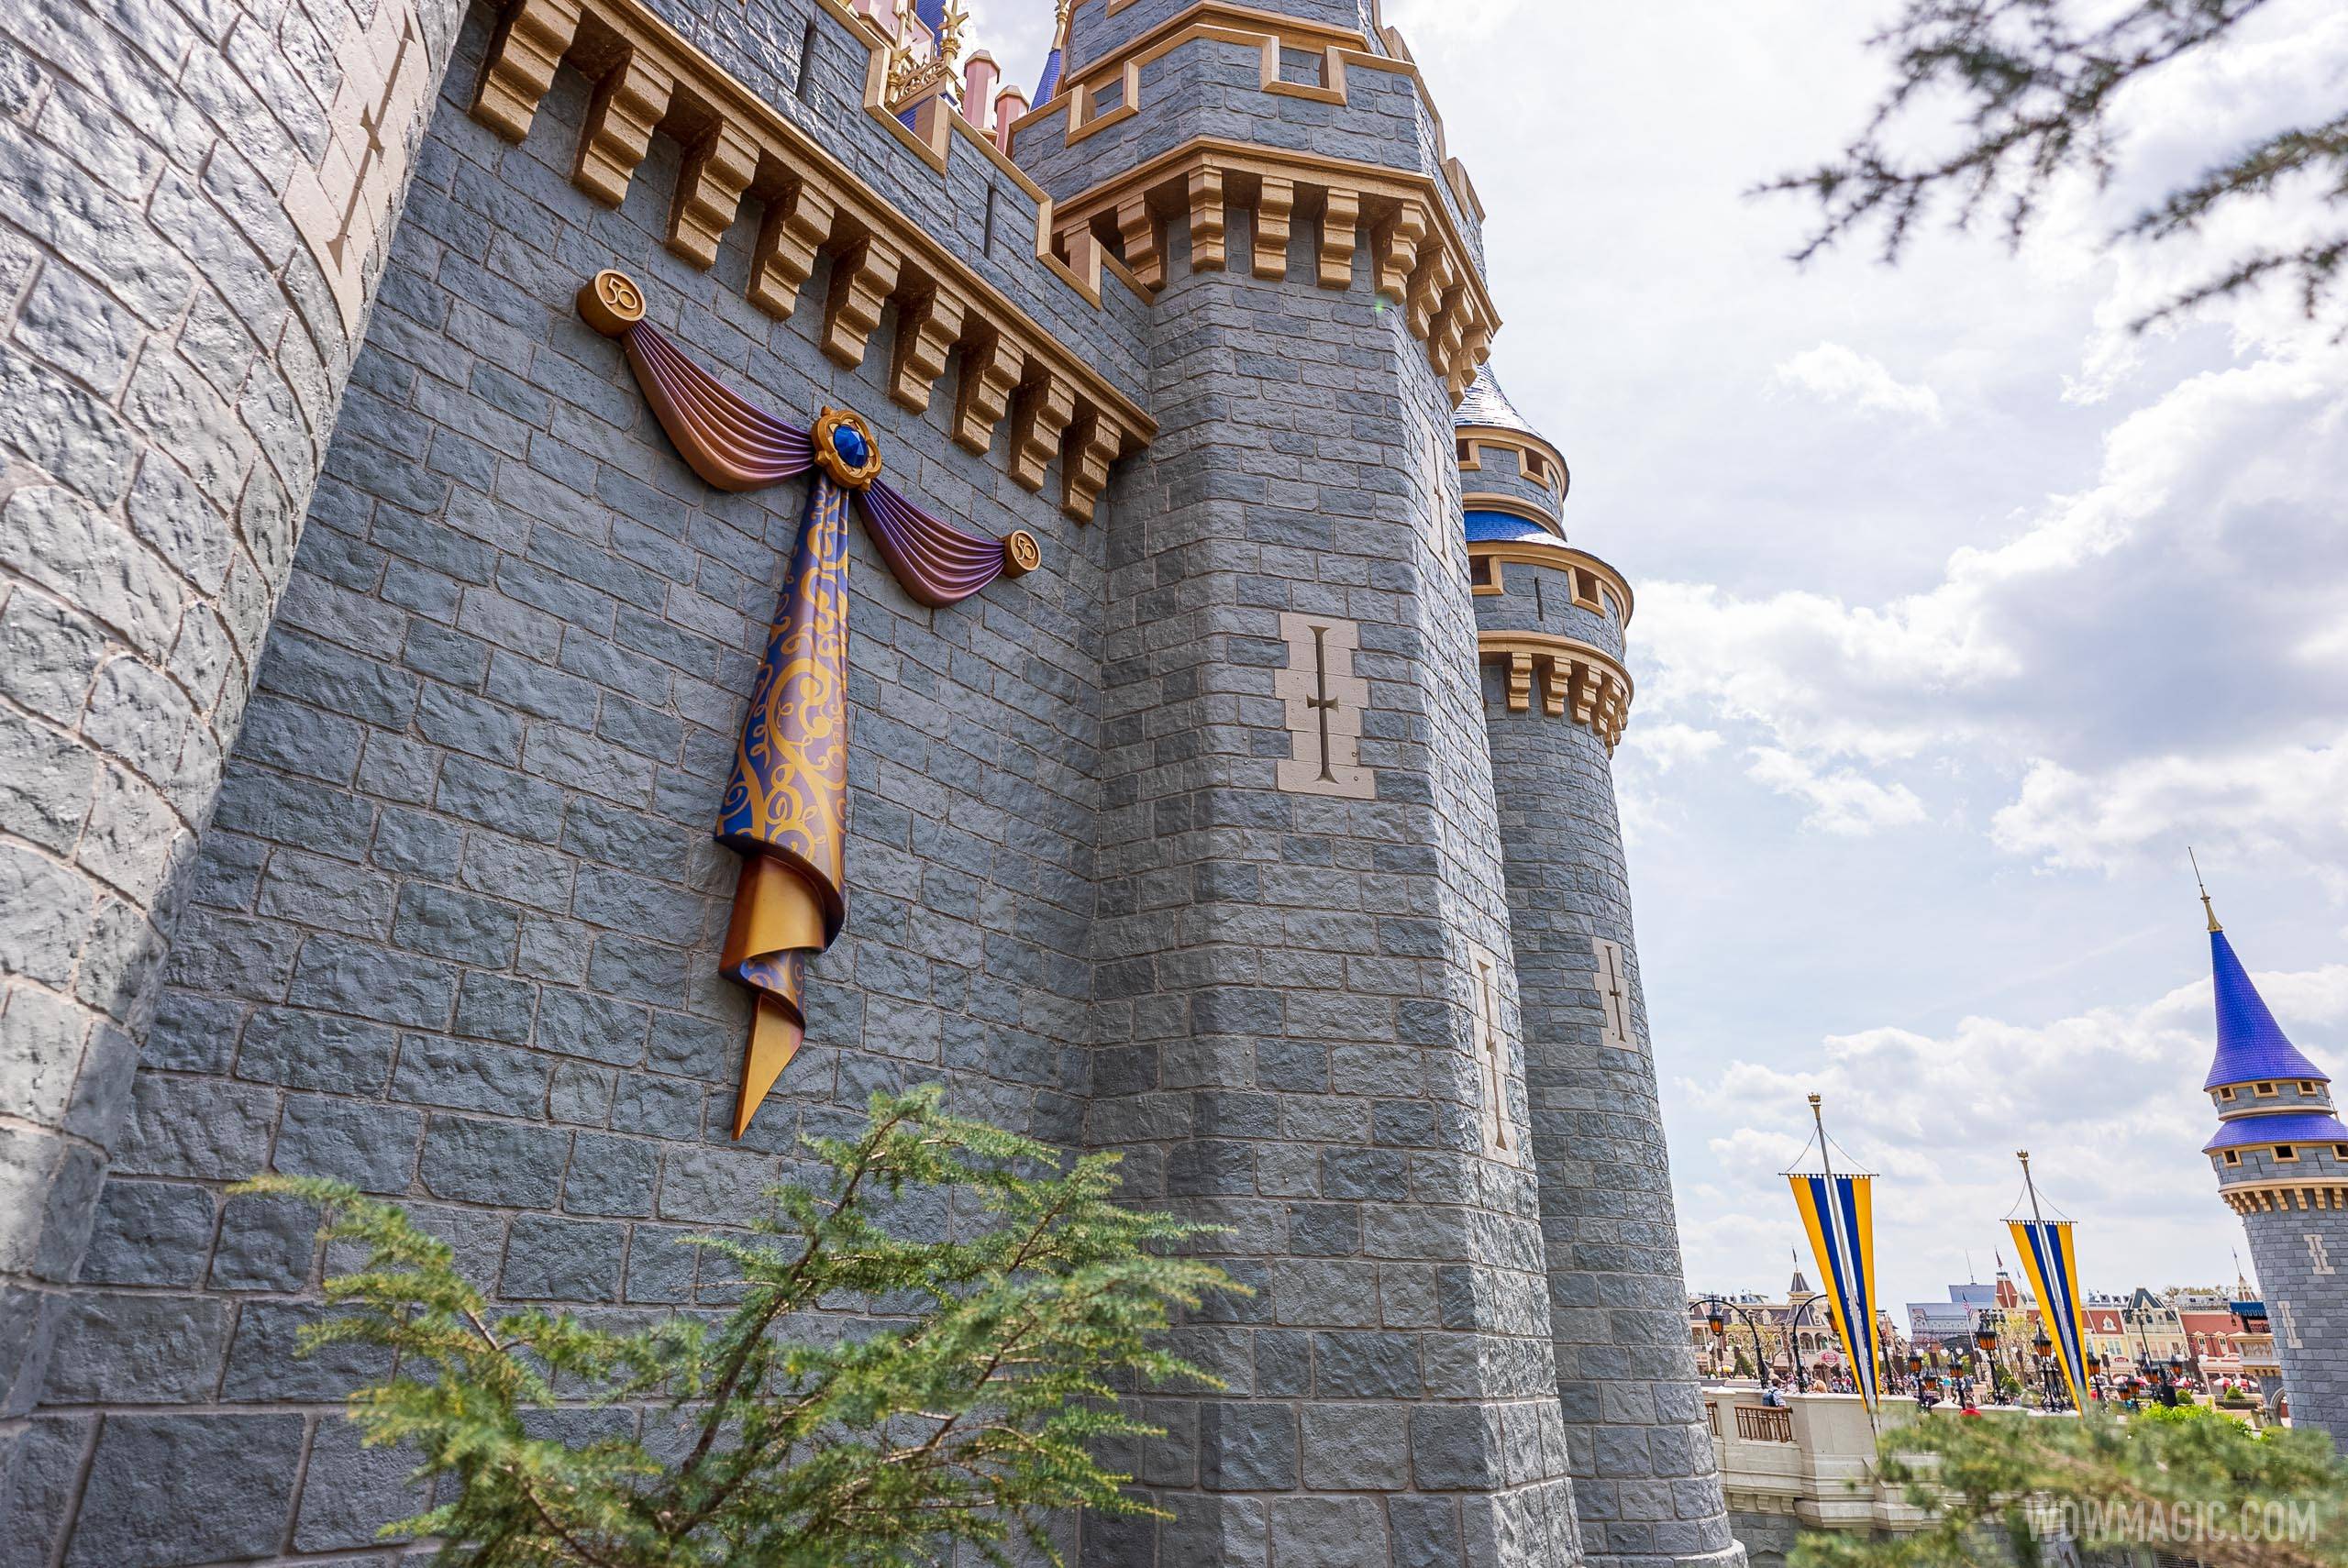 50th anniversary Cinderella Castle additions - March 15 2021